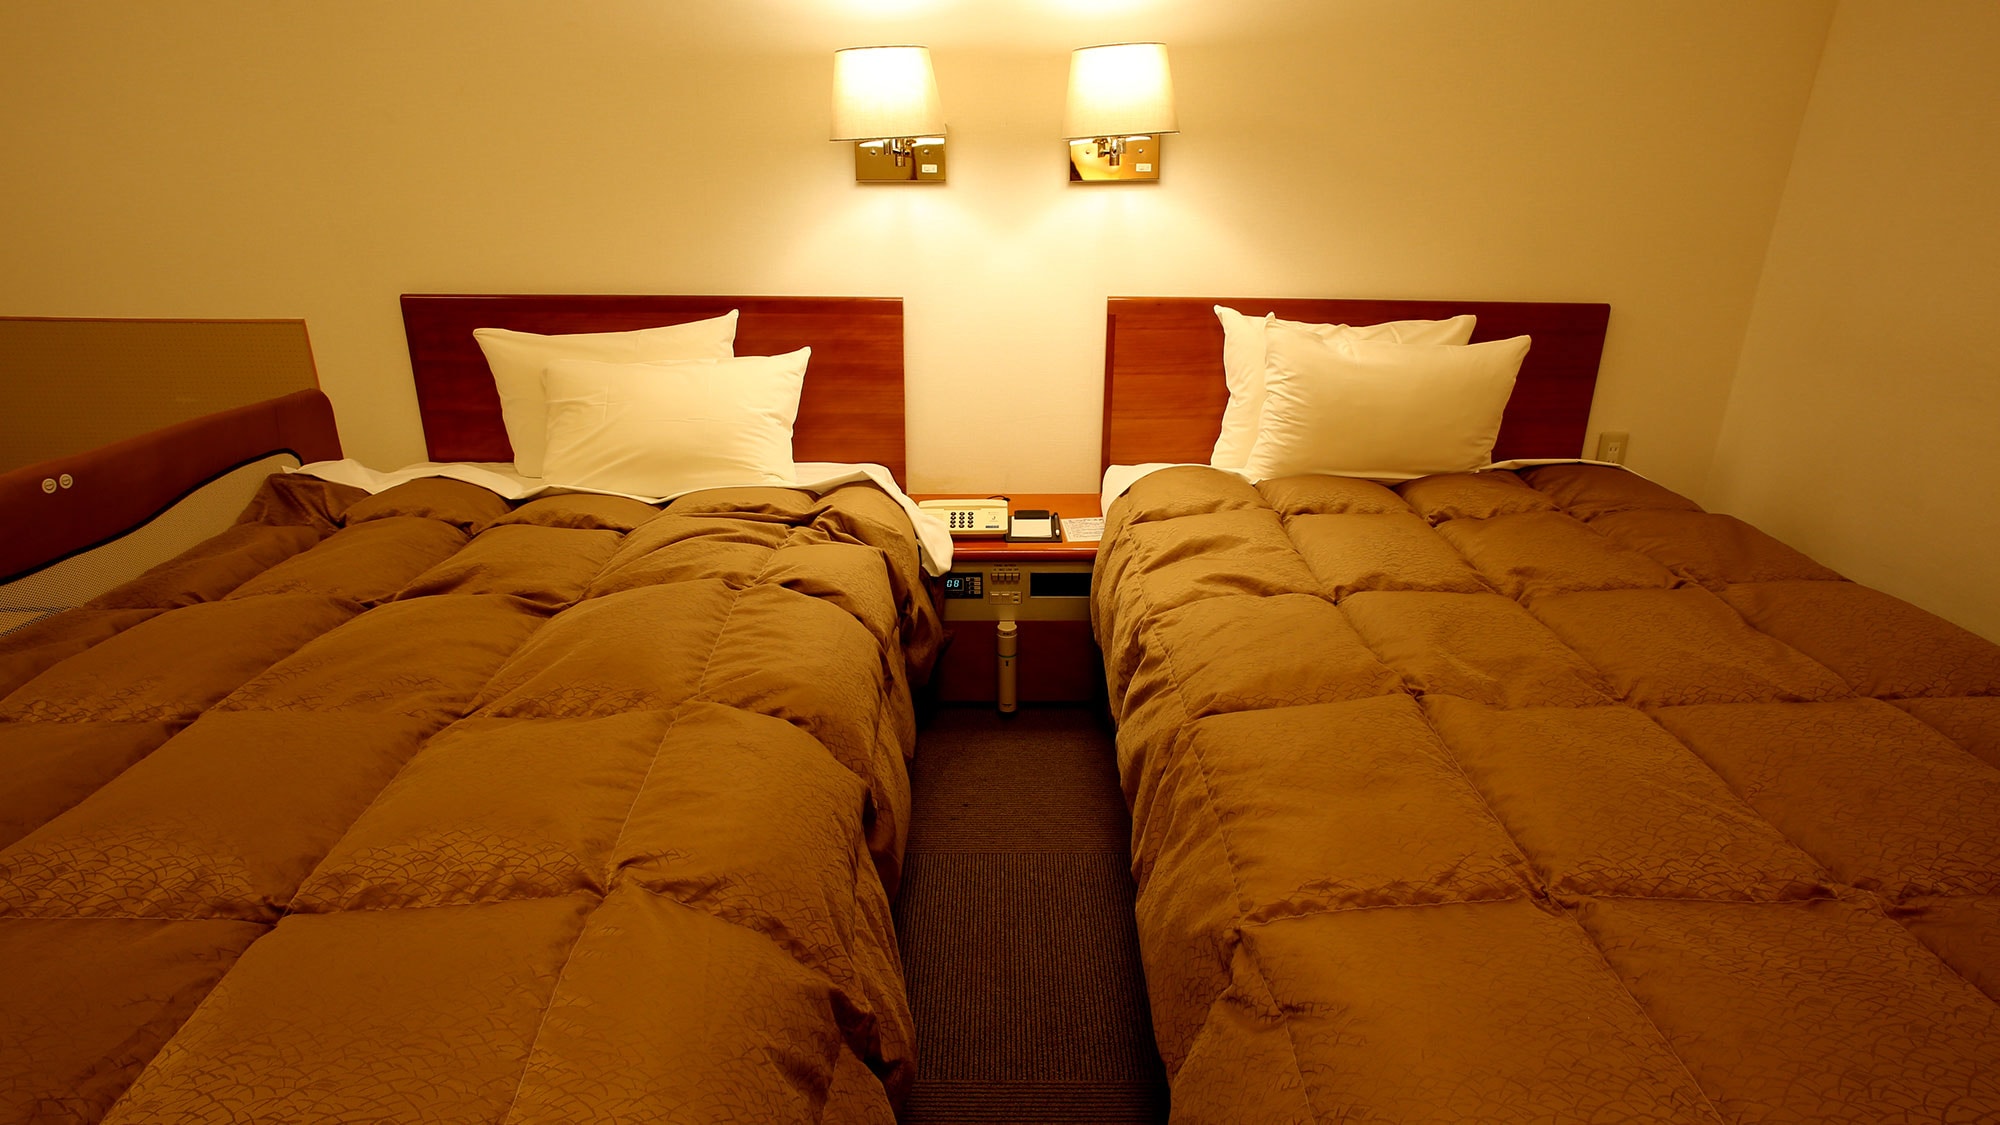 ■ เตียงแบบญี่ปุ่นและแบบตะวันตก